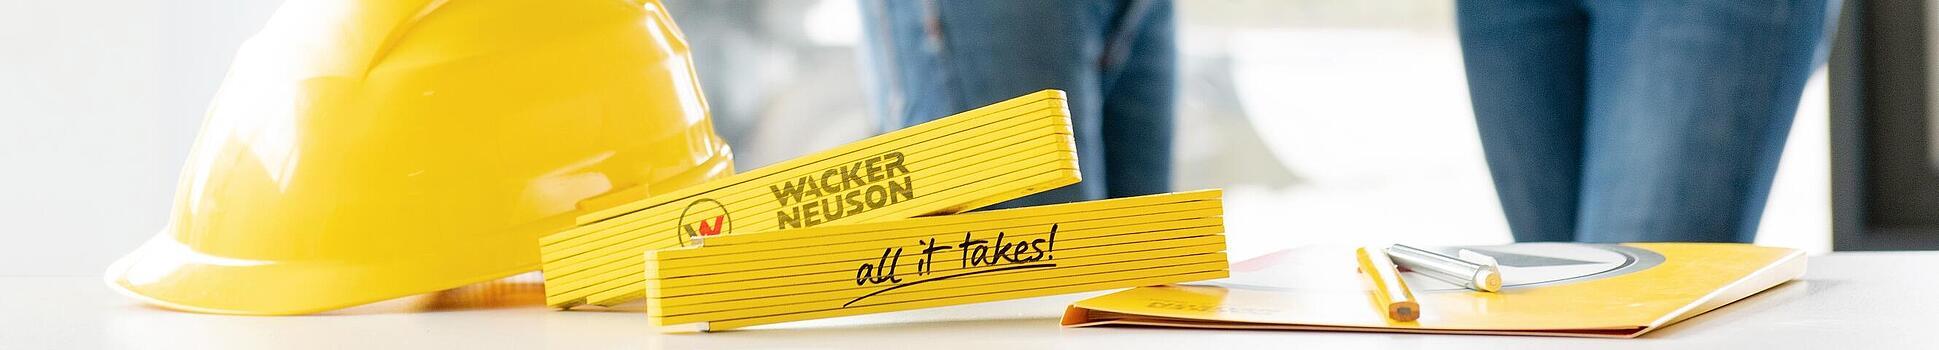 Wacker Neuson Merchandise Artikel liegen auf Tisch im Vordergrund, Wacker Neuson Mitarbeiter im Hintergrund.